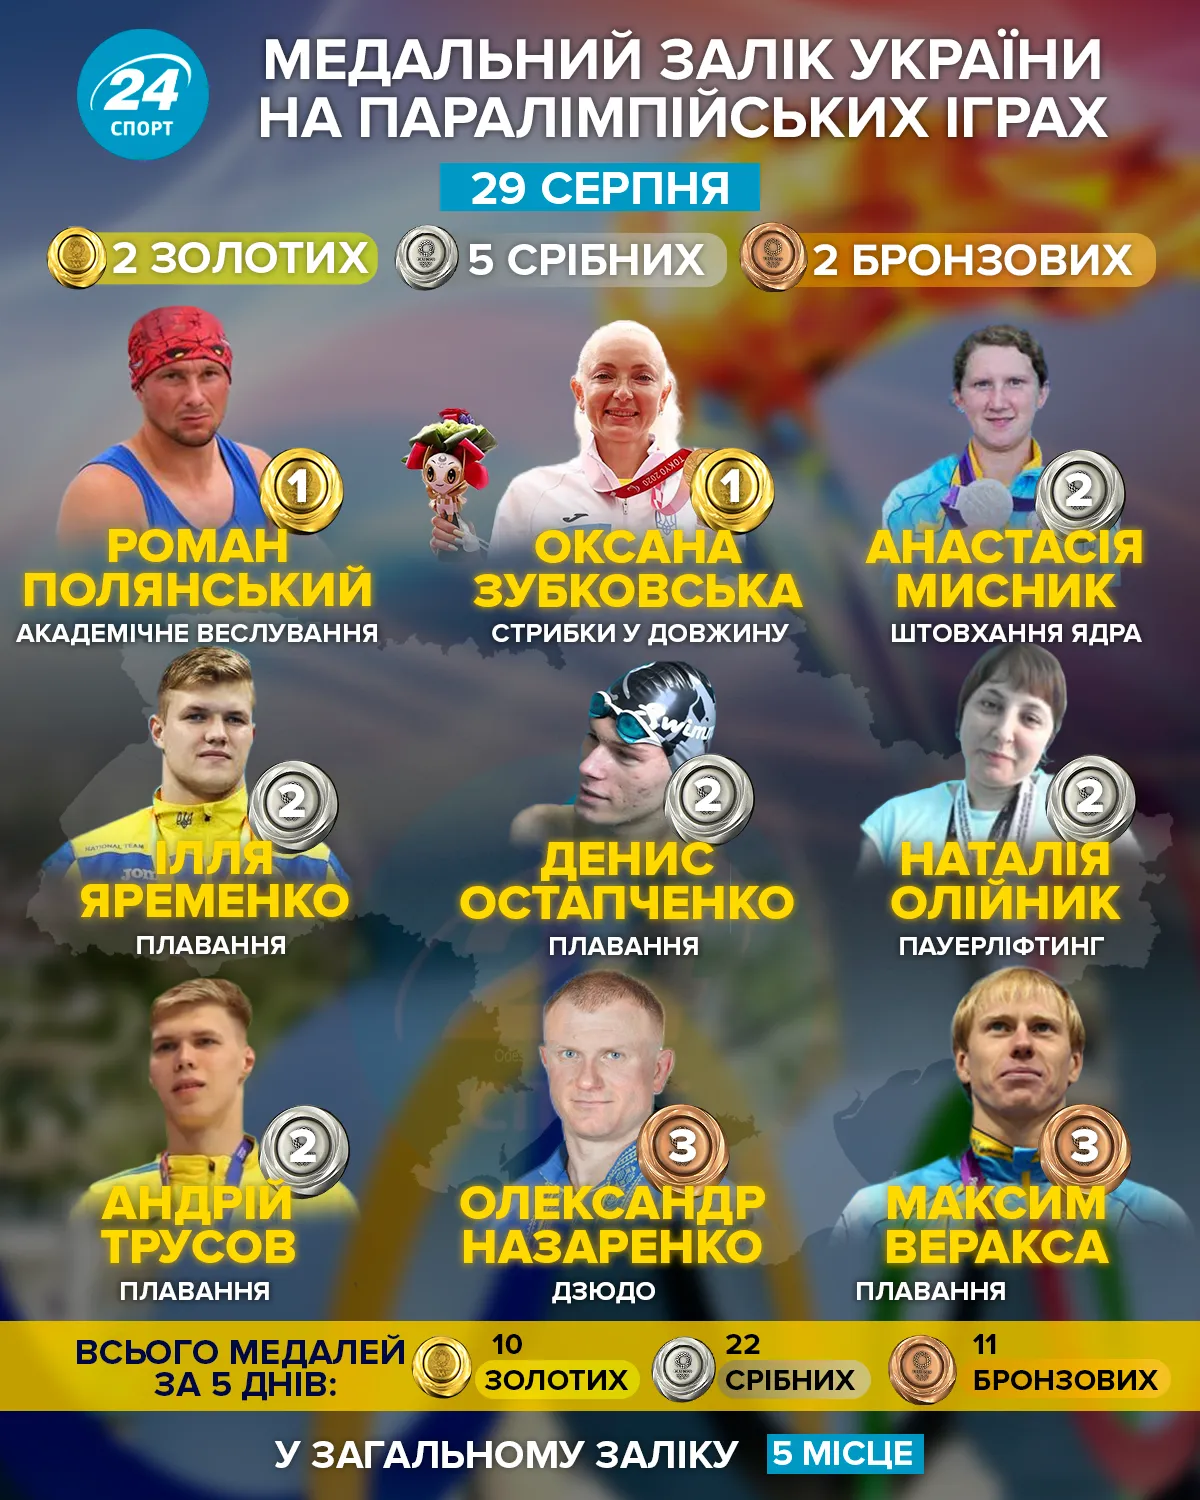 Досягнення українців на Паралімпіаді 29 серпня